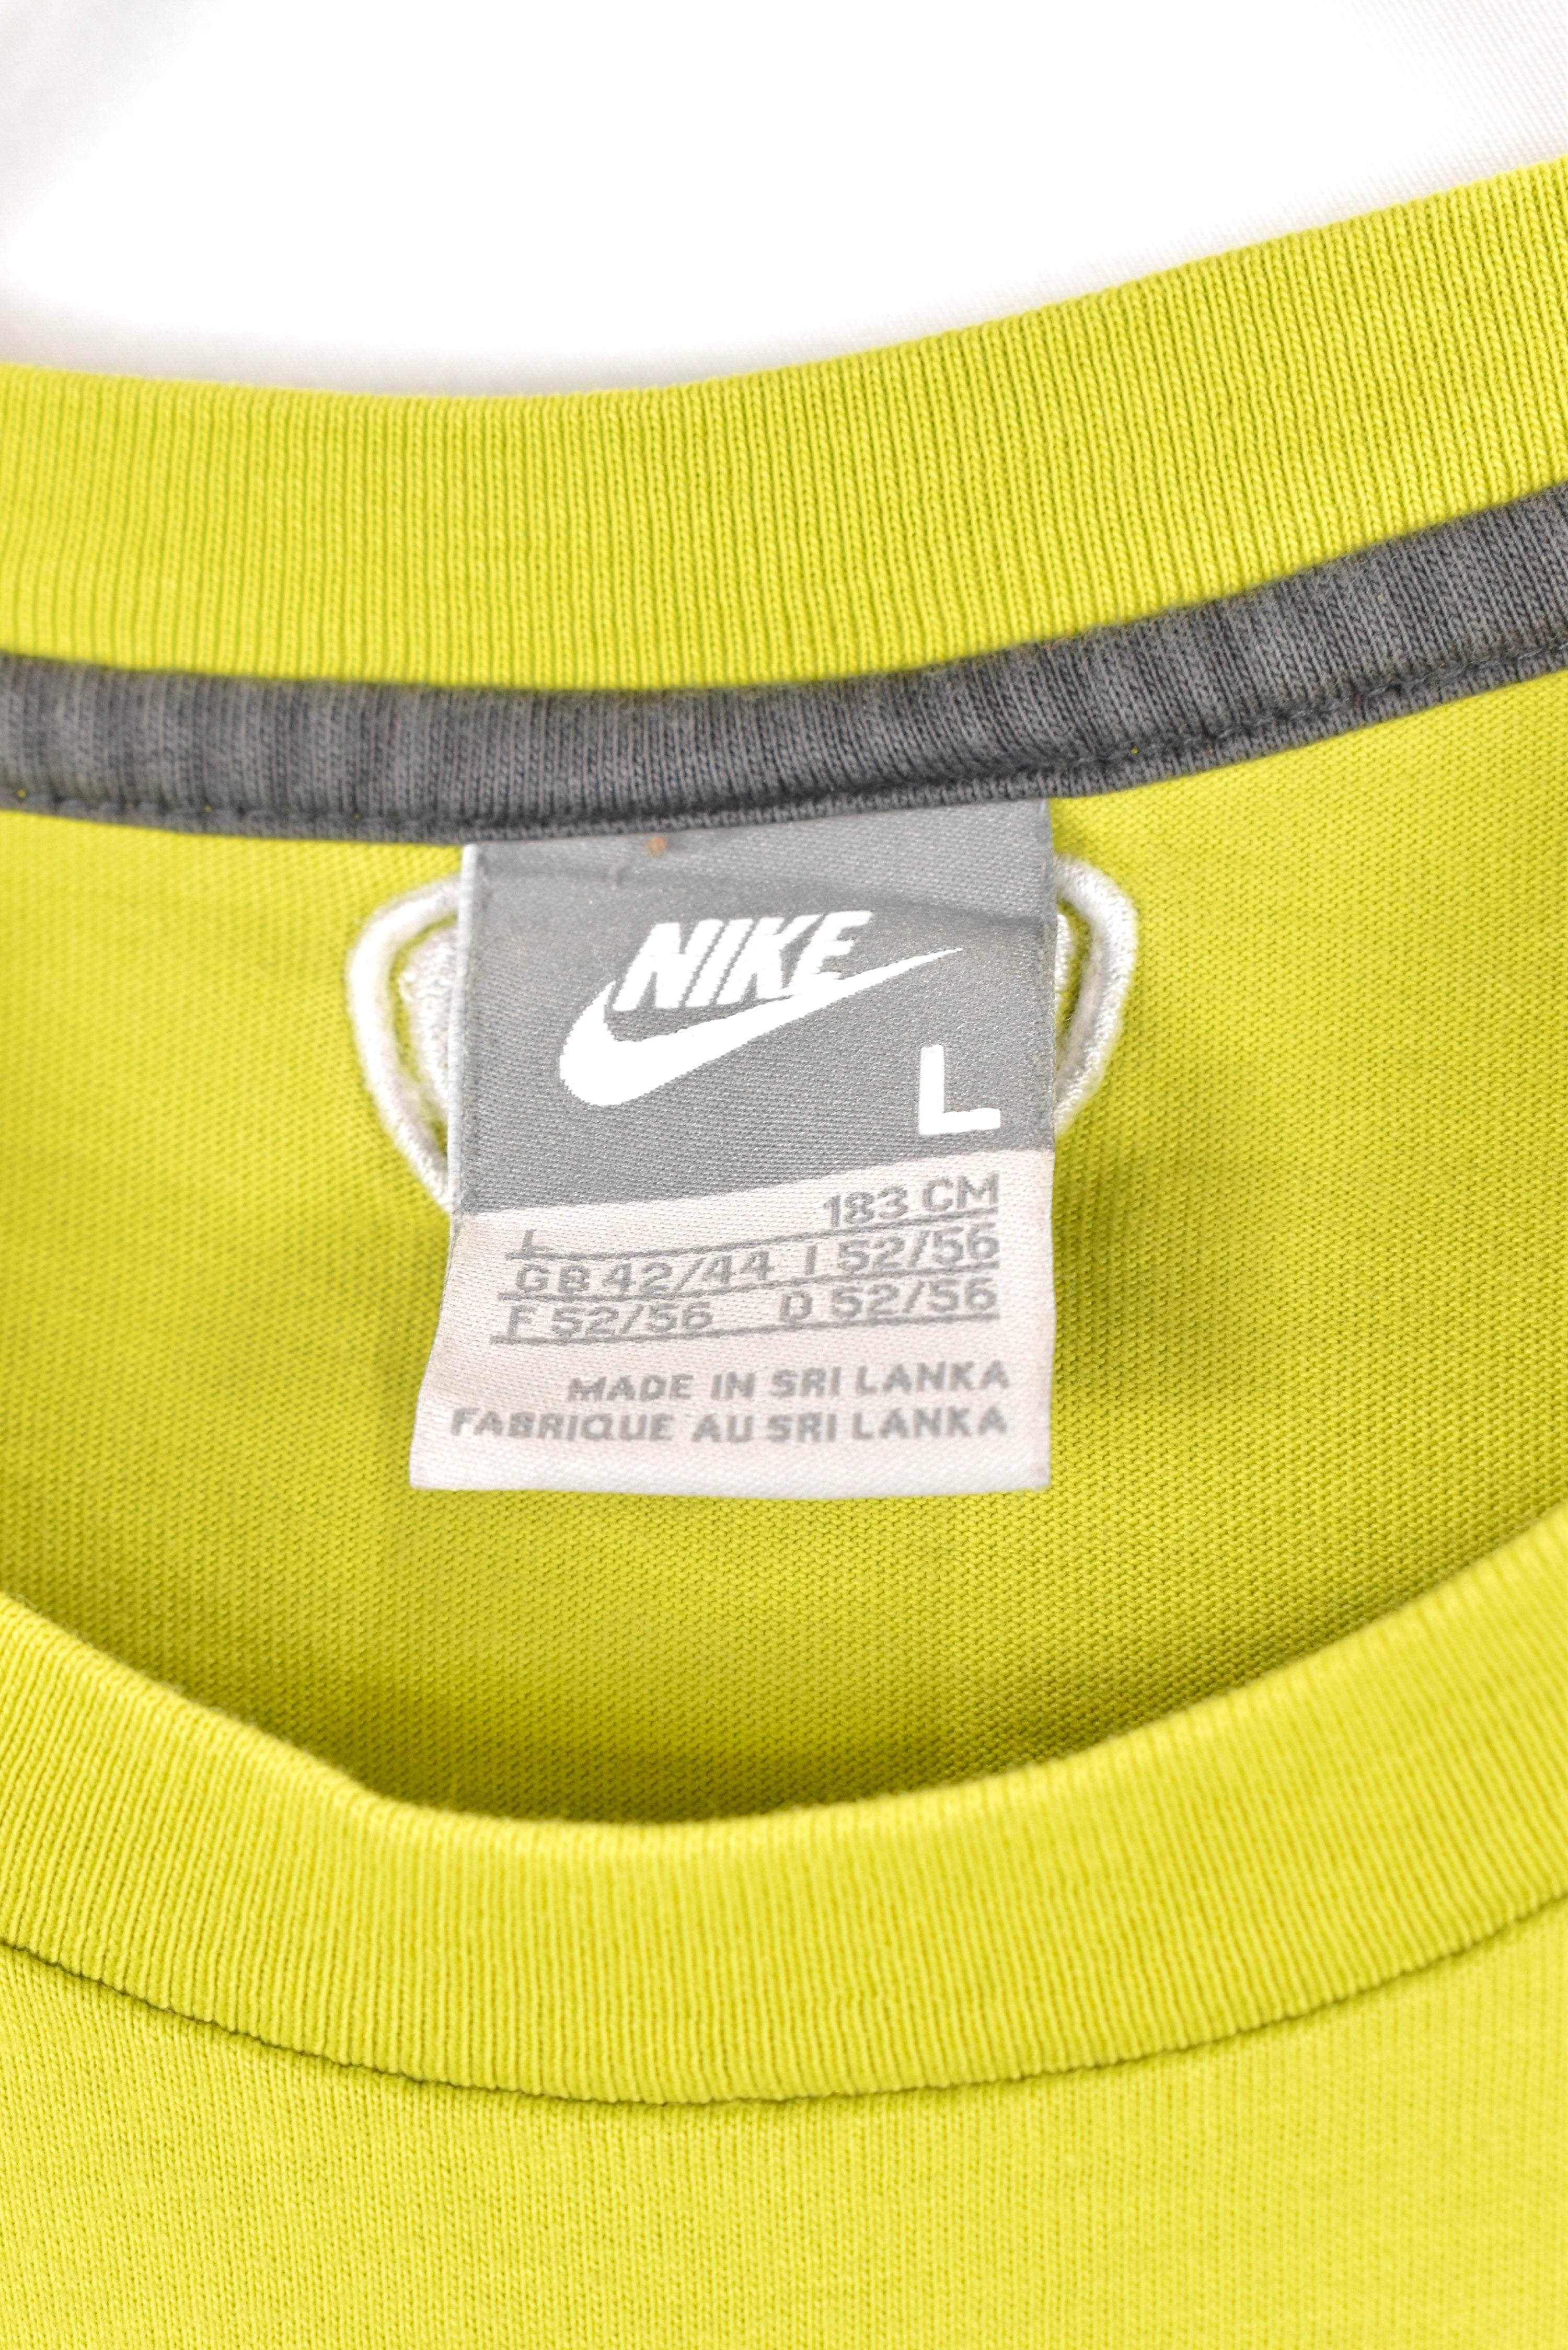 Women's vintage Nike shirt, green graphic tee - AU Large NIKE